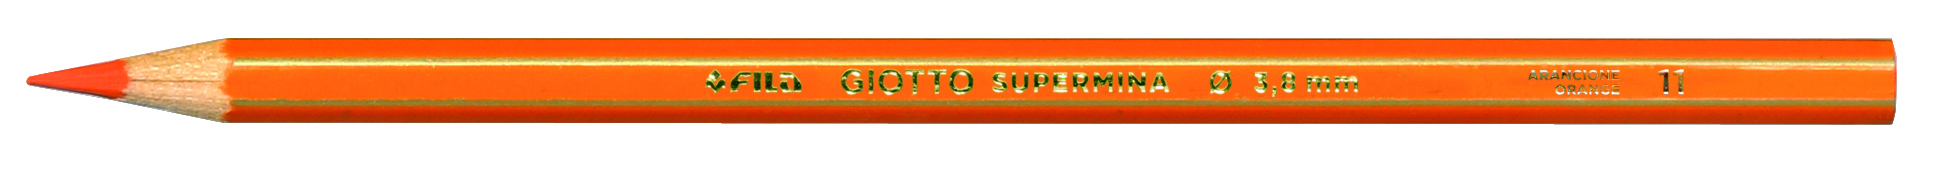 Pastello Giotto Supermina Monocolore Arancione 11 23901100 8000825239113